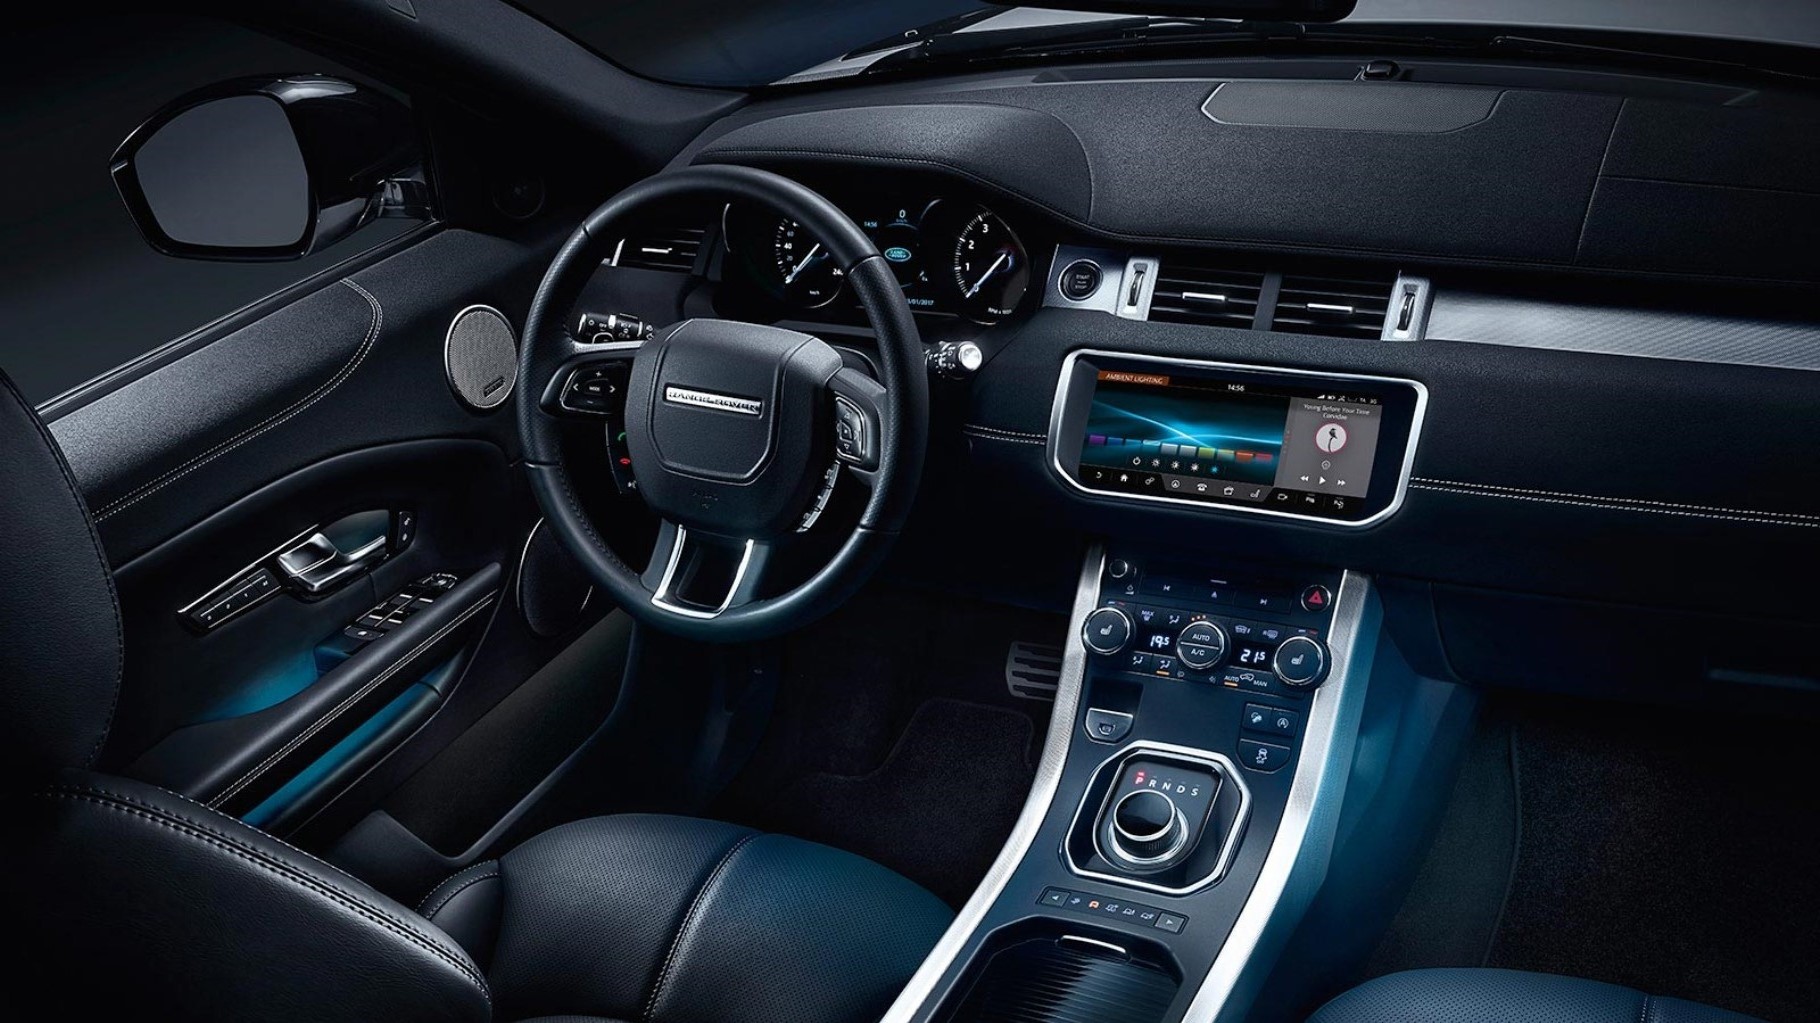 Interior of the 2018 Land Rover Range Rover Evoque